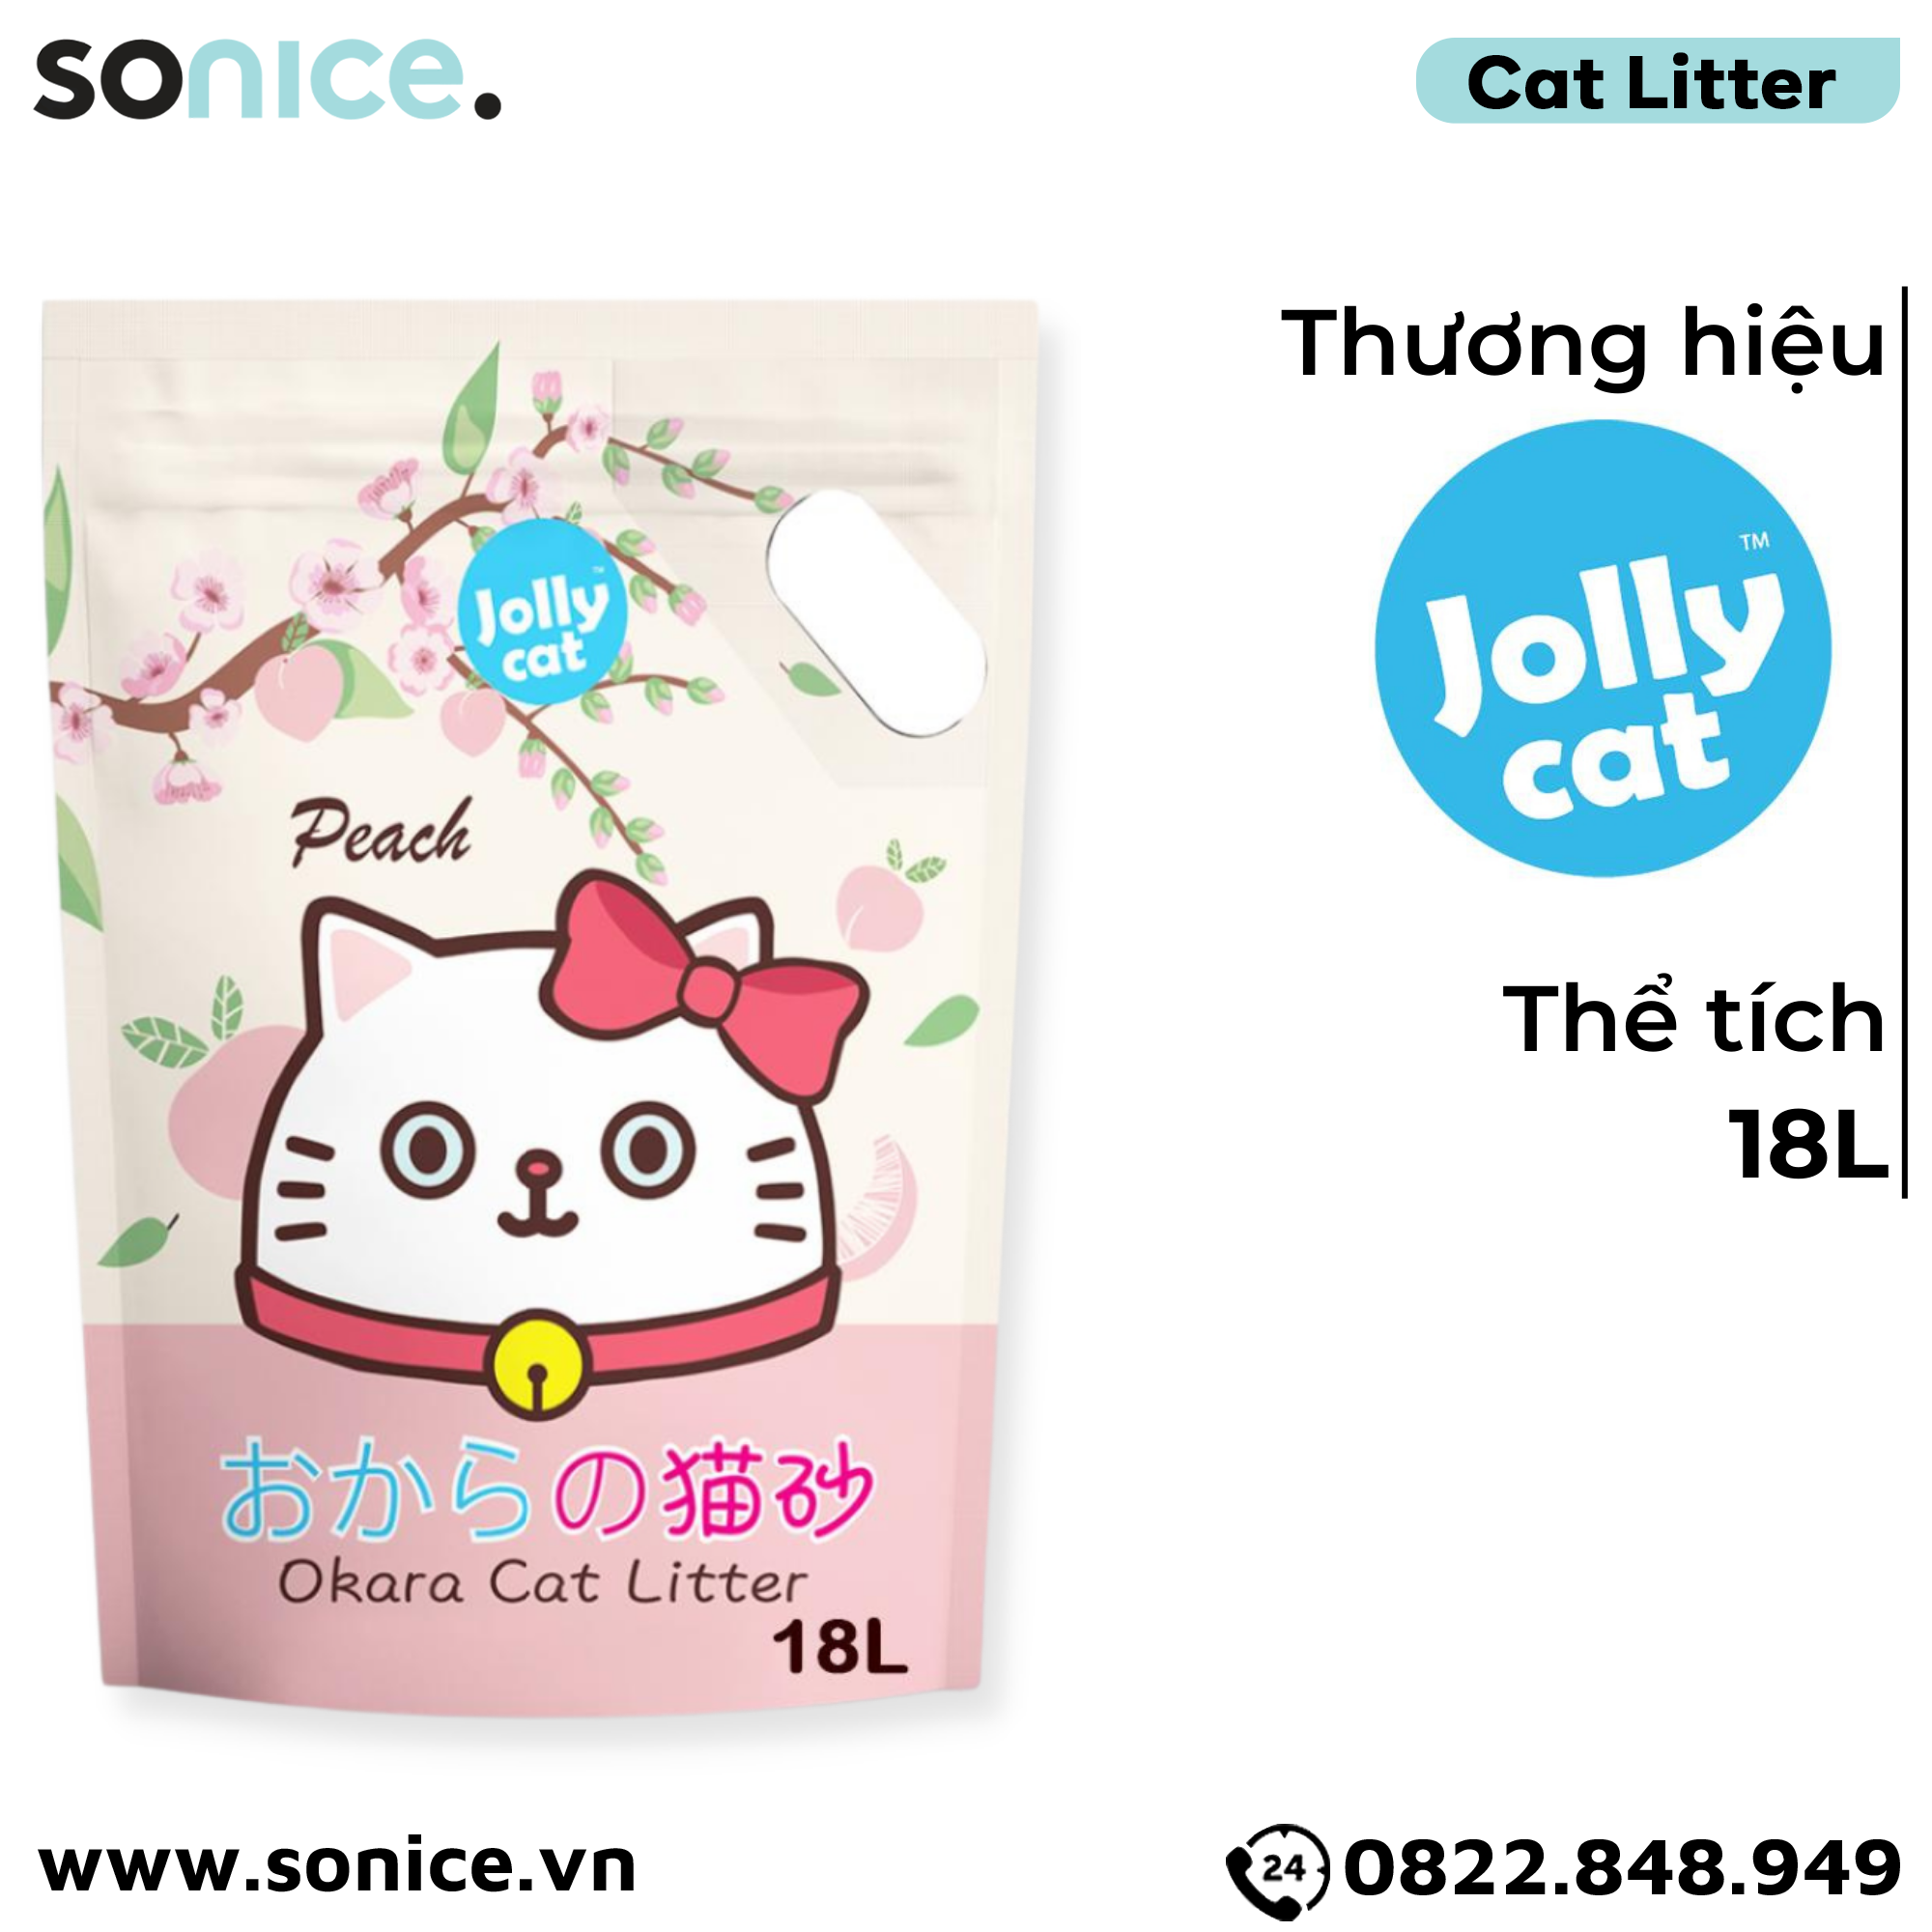  Cát vệ sinh Premium Tofu Jolly Cat Litter Peach 18L - Làm từ đậu nành soya hương đào SONICE. 